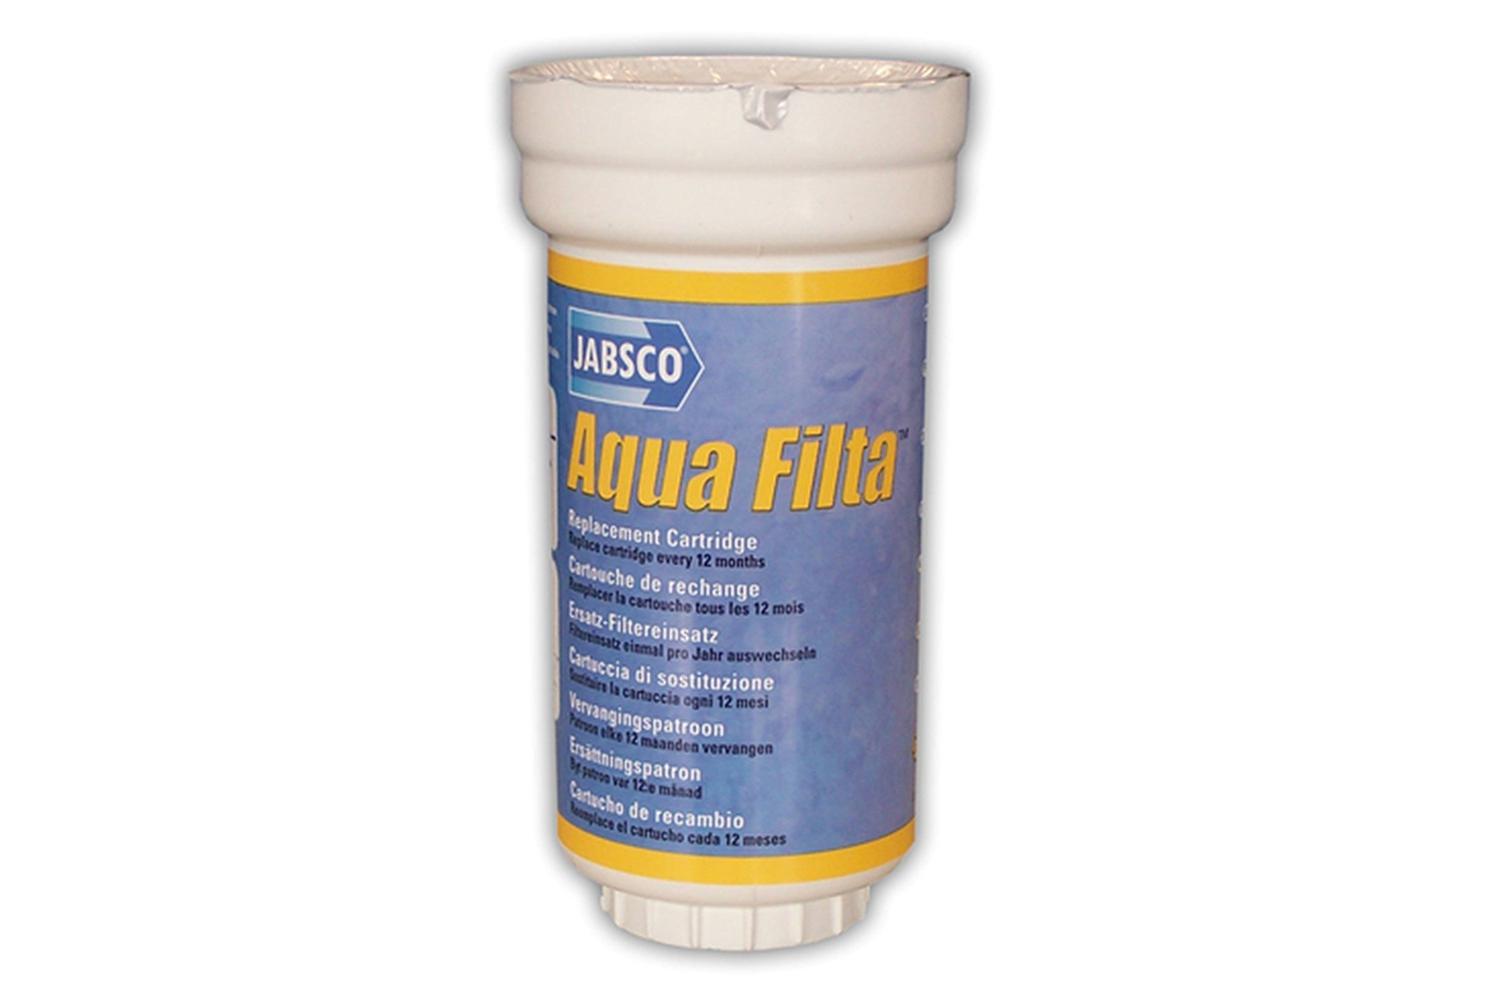 Jabsco aqua-filta los filter element